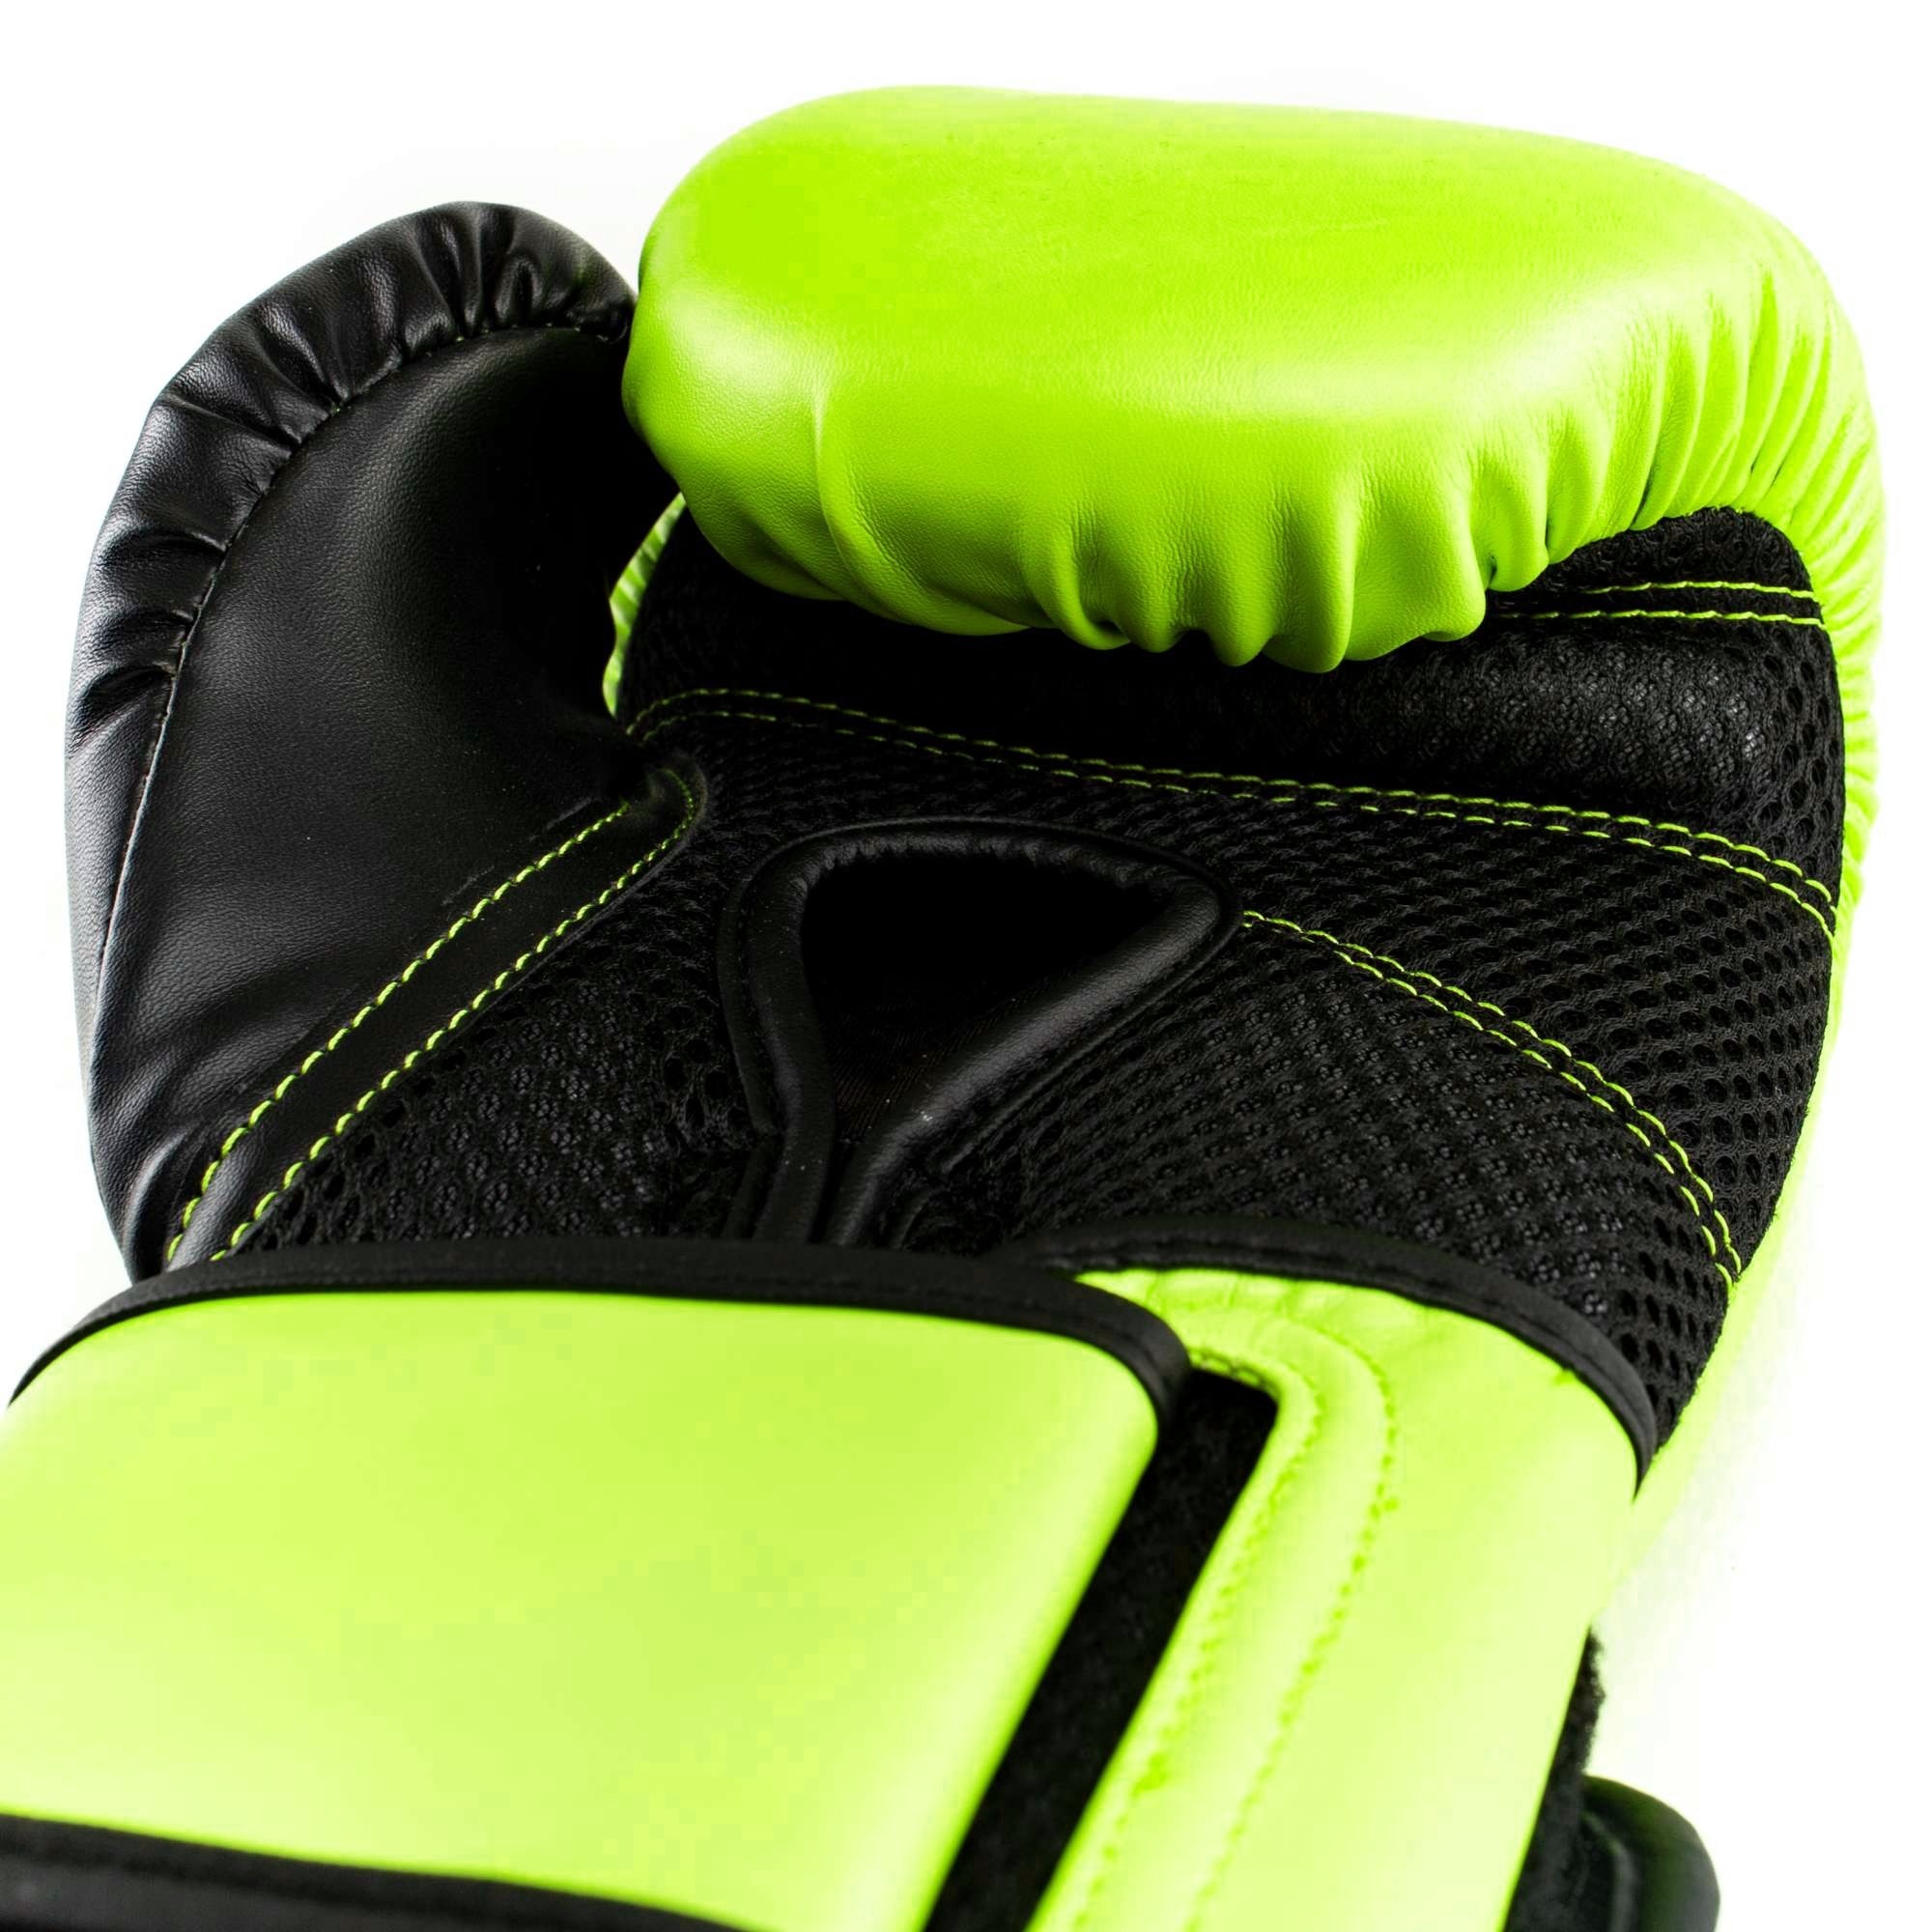  Боксерские перчатки Everlast Powerlock PU 2 салатовые 